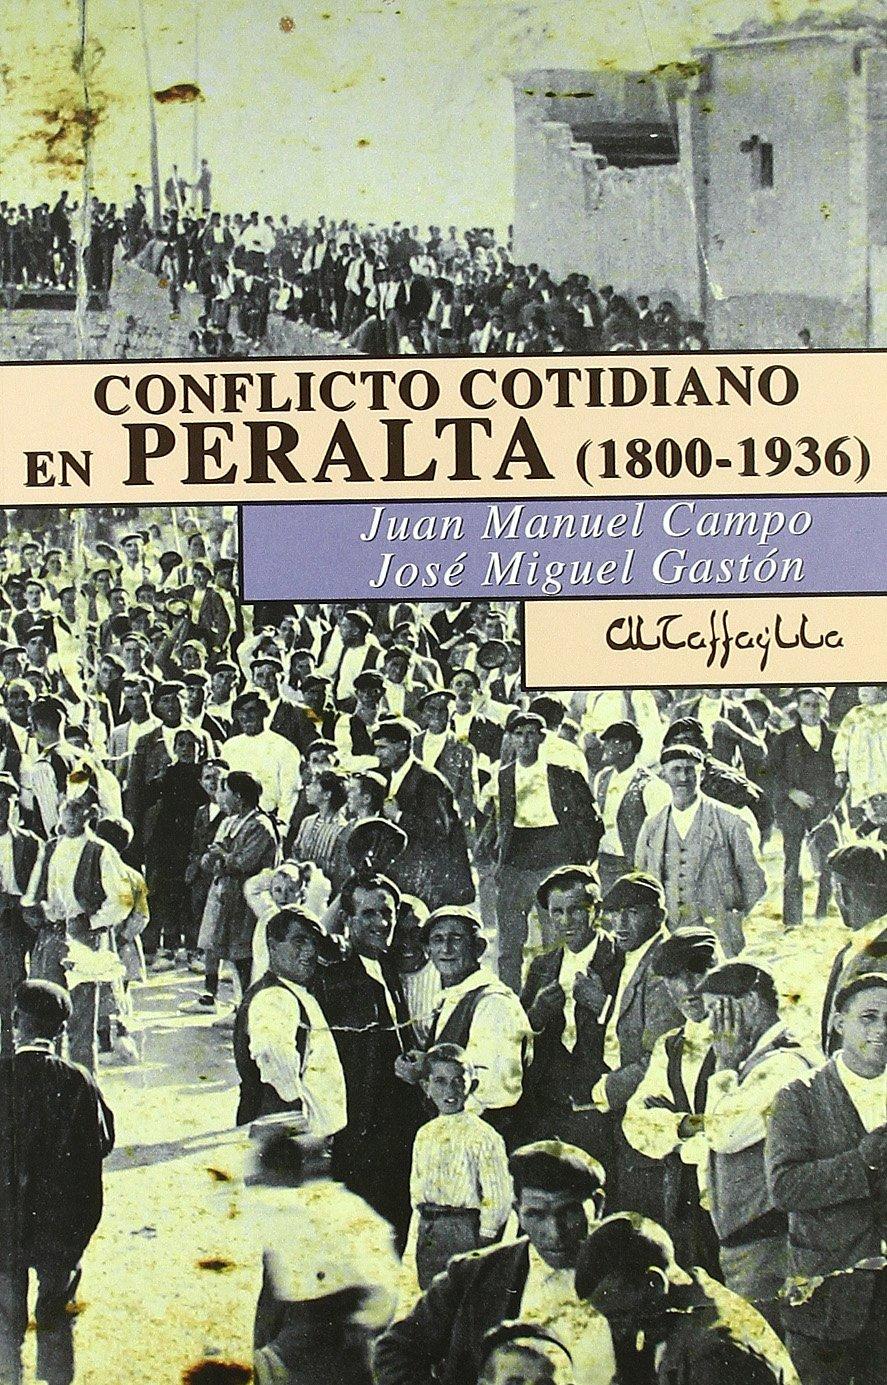 CONFLICTO COTIDIANO EN PERALTA, 1800-1936